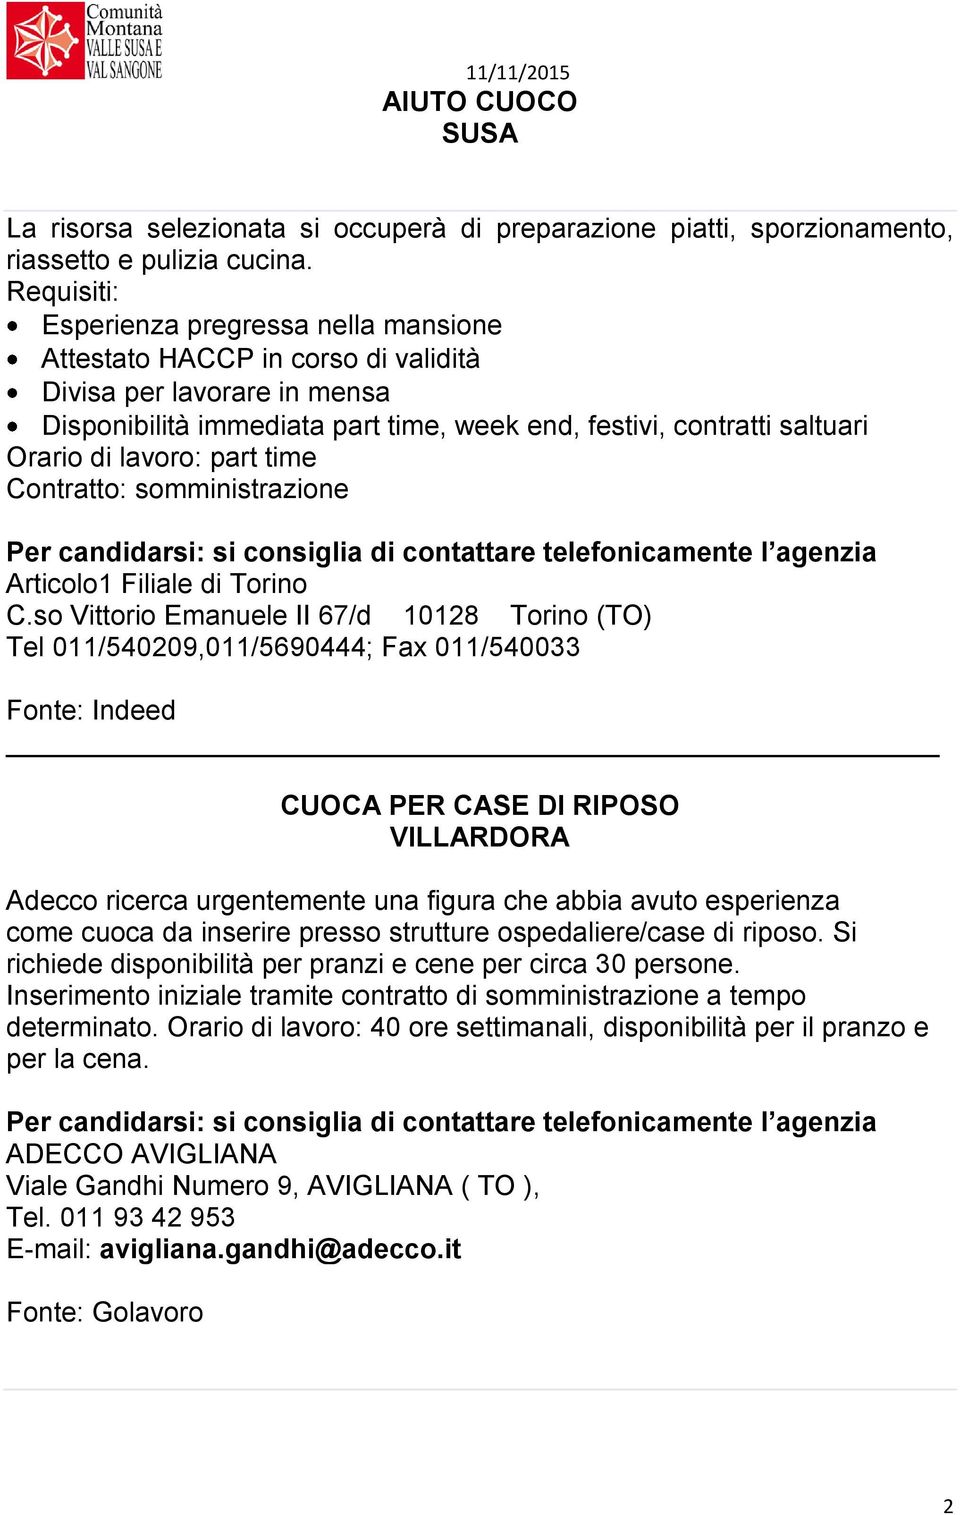 lavoro: part time Contratto: somministrazione Articolo1 Filiale di Torino C.